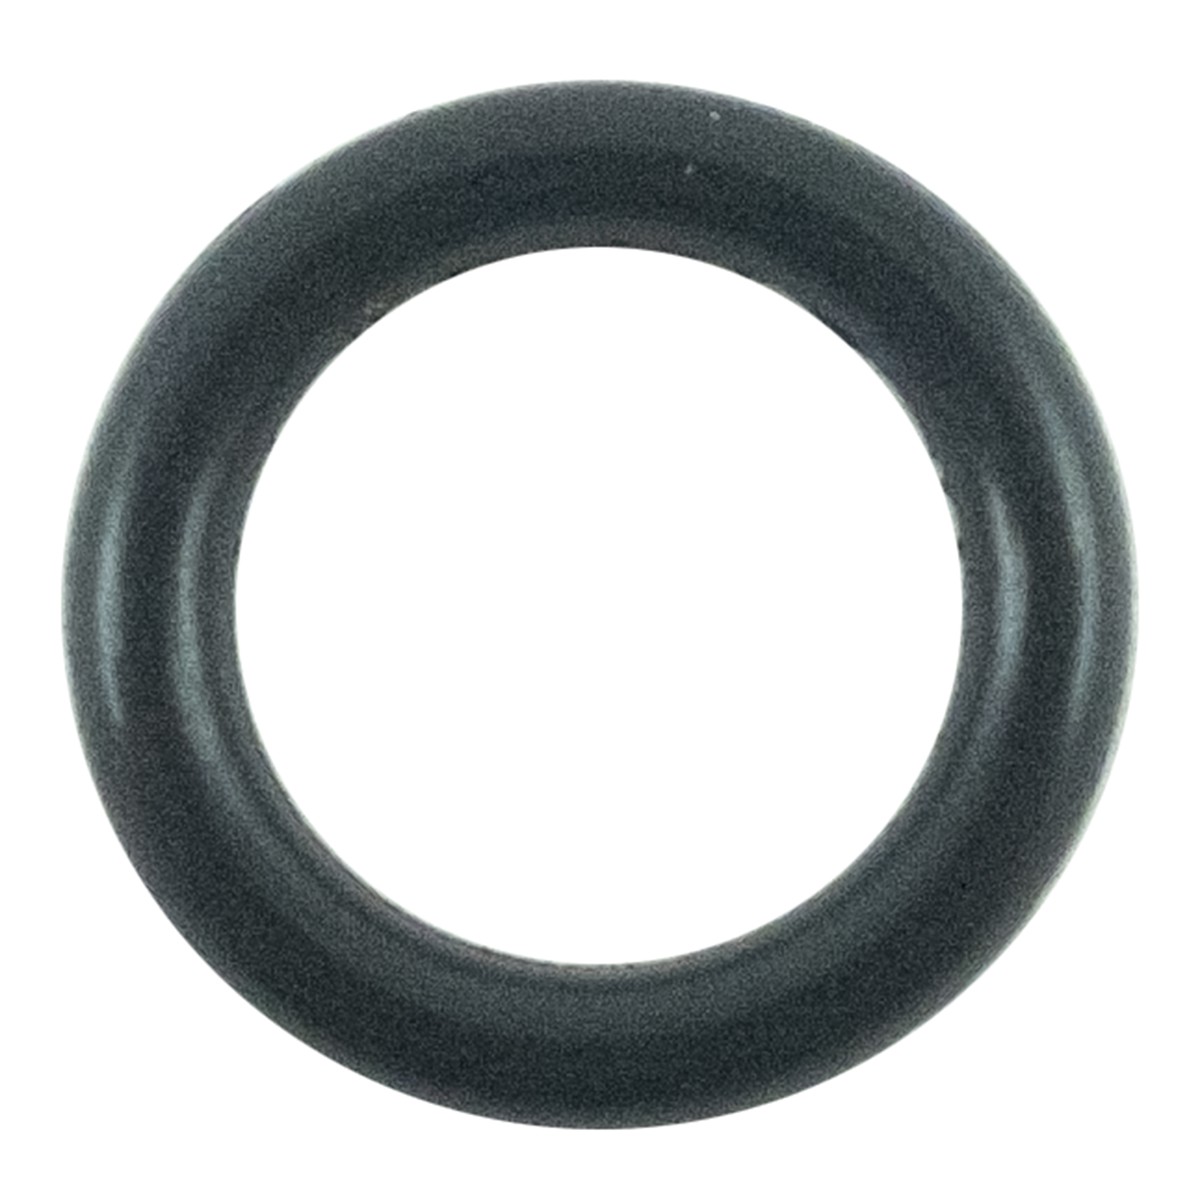 O-ring 6.50 x 1.5 mm / LS MT3.35 / LS MT3.40 / LS MT3.50 / LS MT3.60 / S804007010 / 40029237